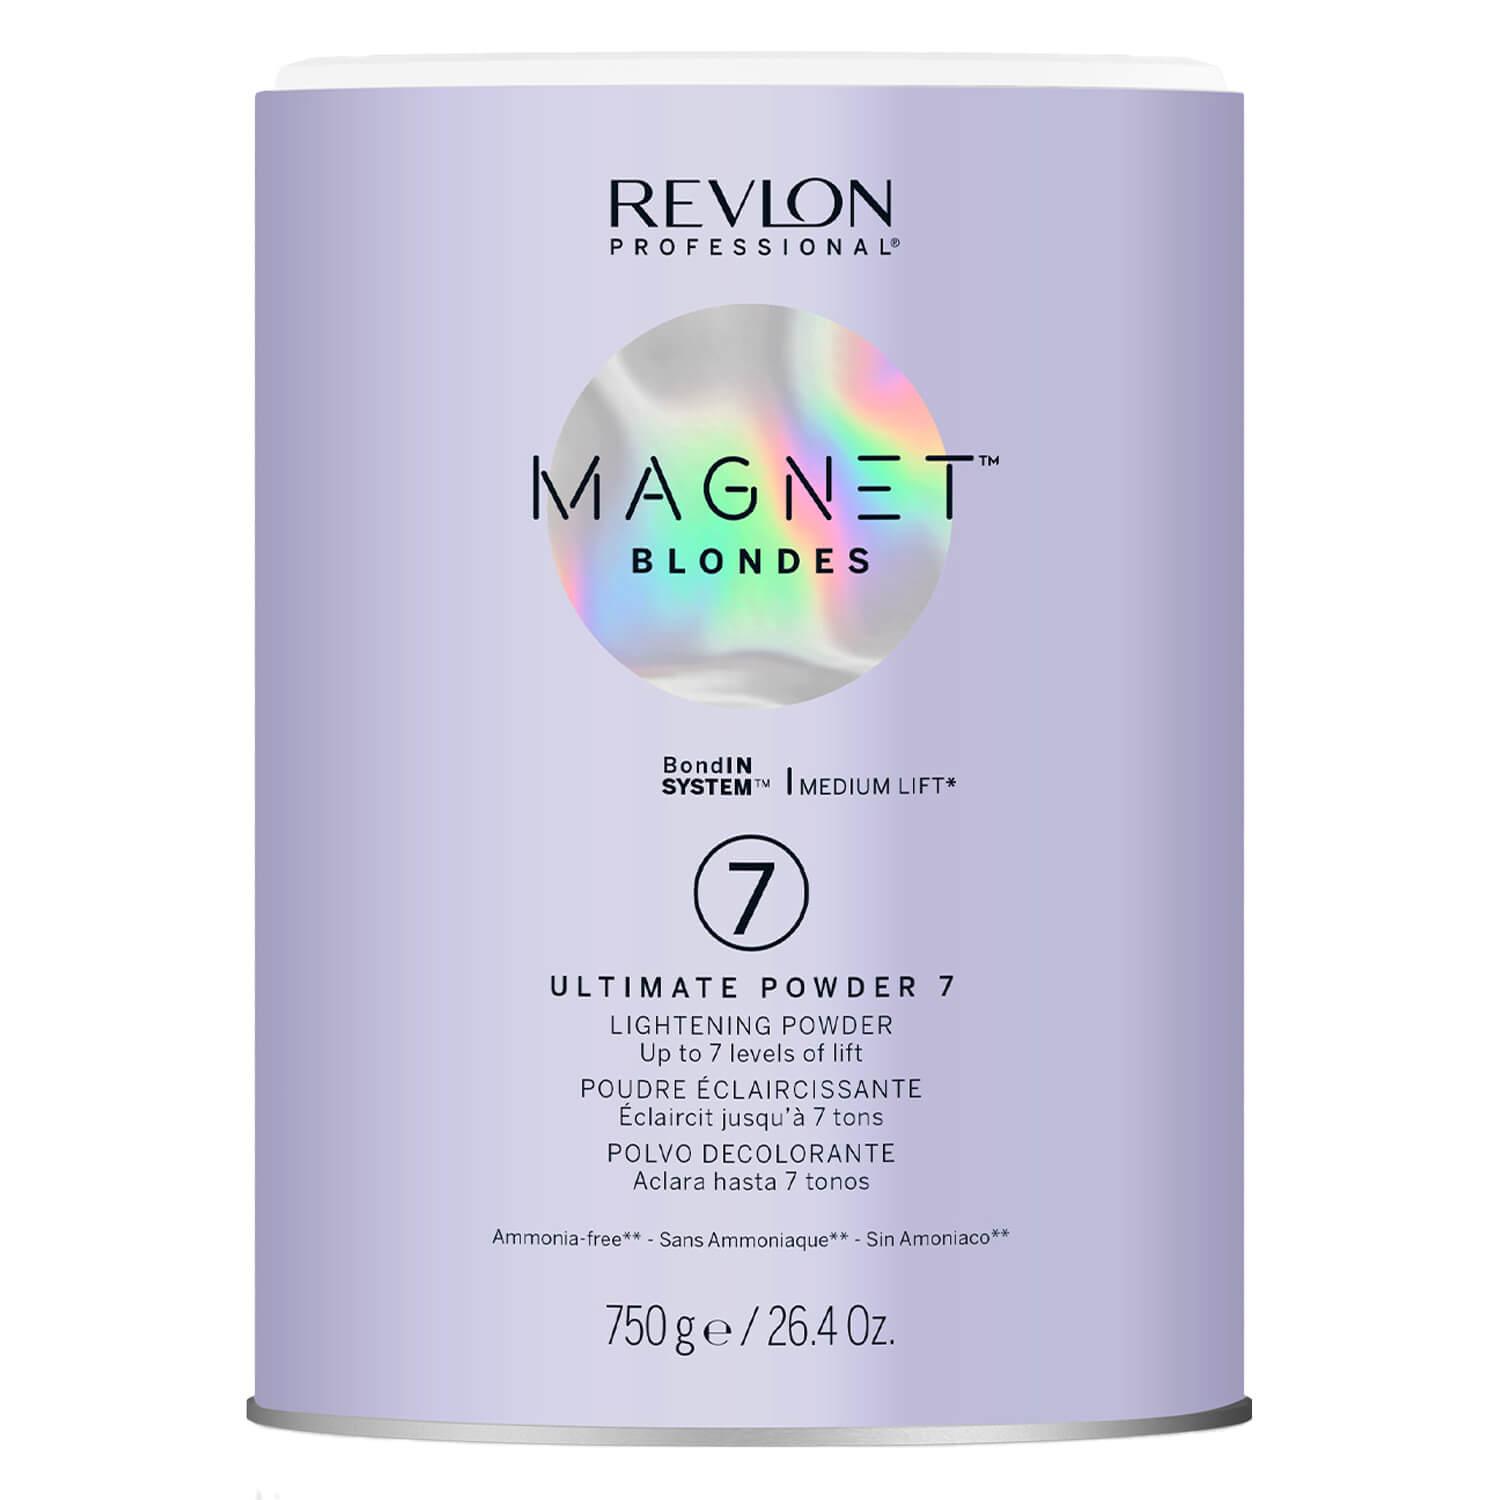 Magnet Blondes Ultimate Powder 7